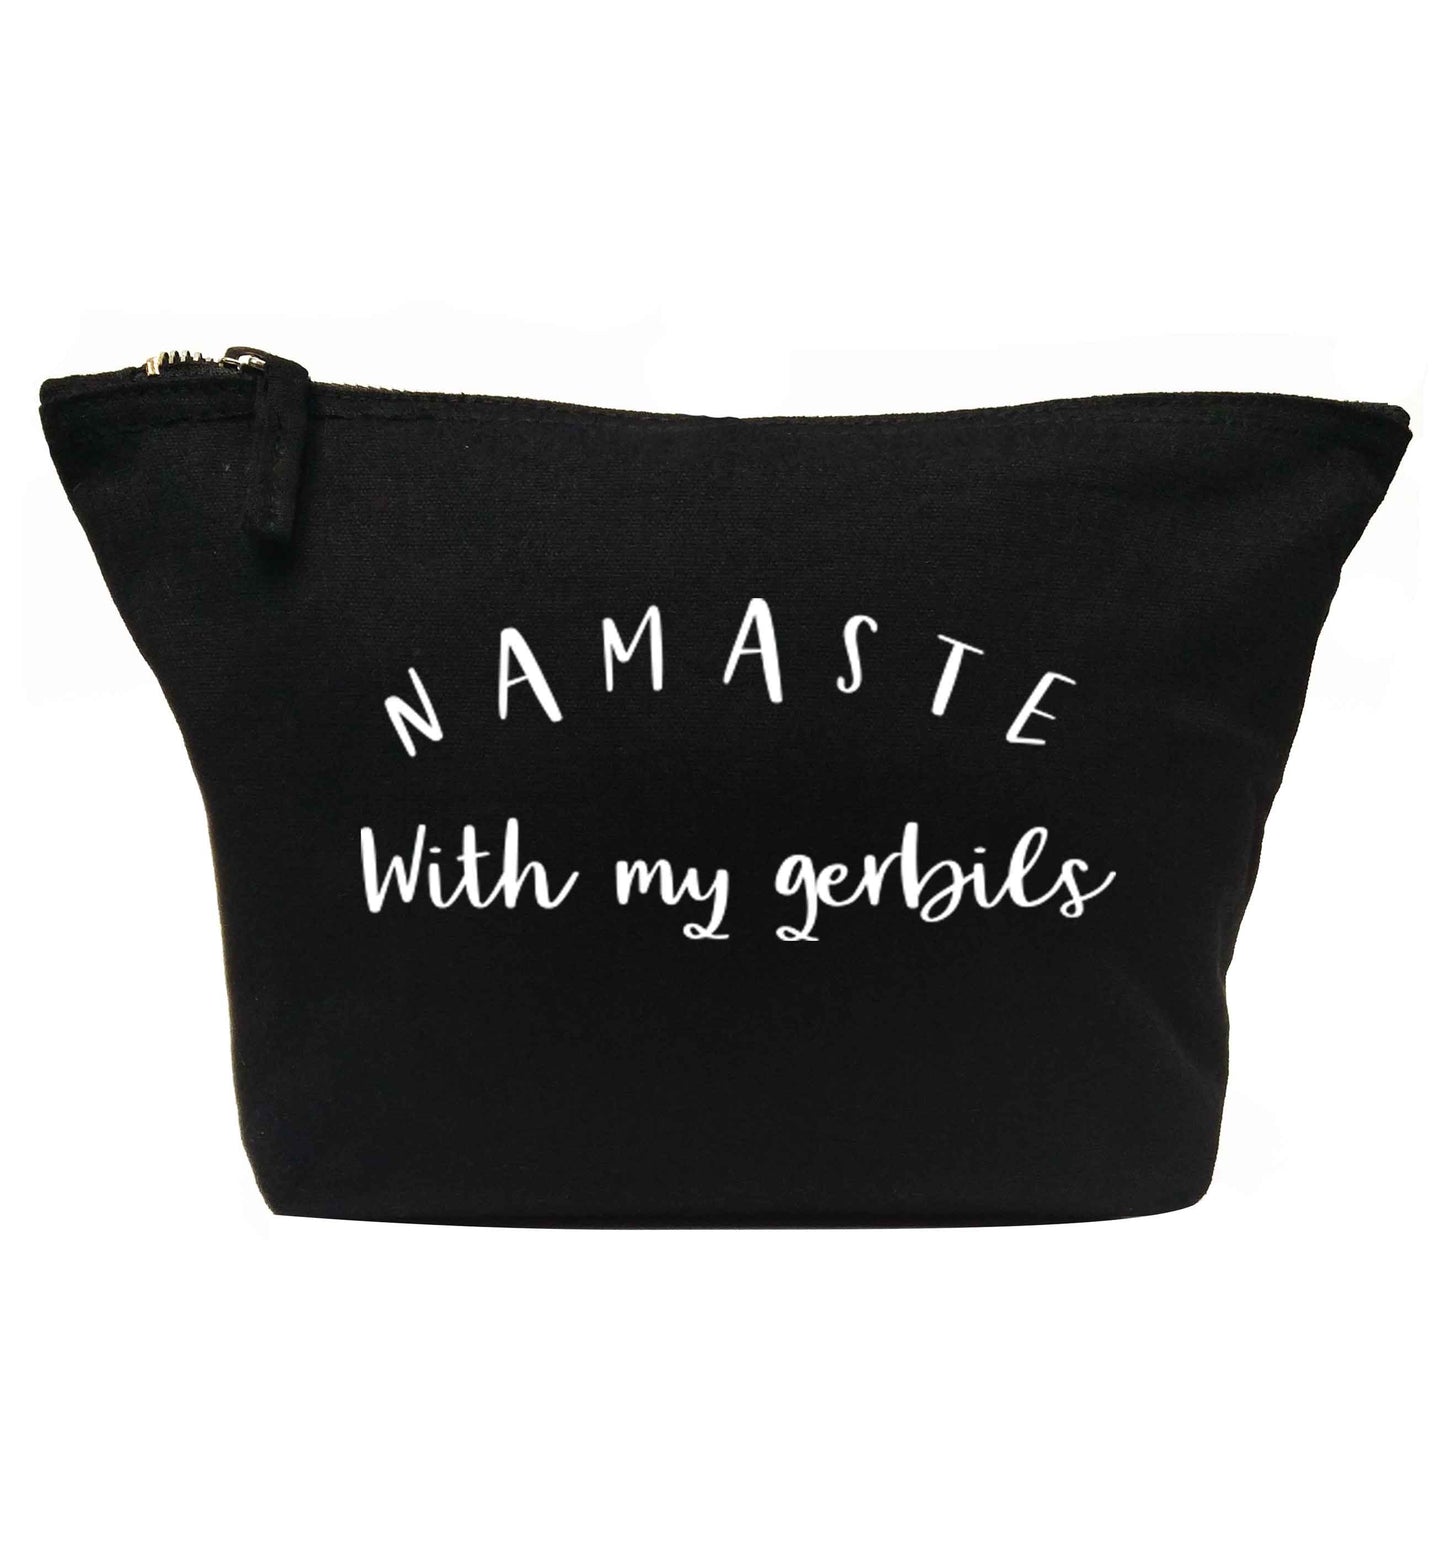 Namaste with my gerbils | makeup / wash bag